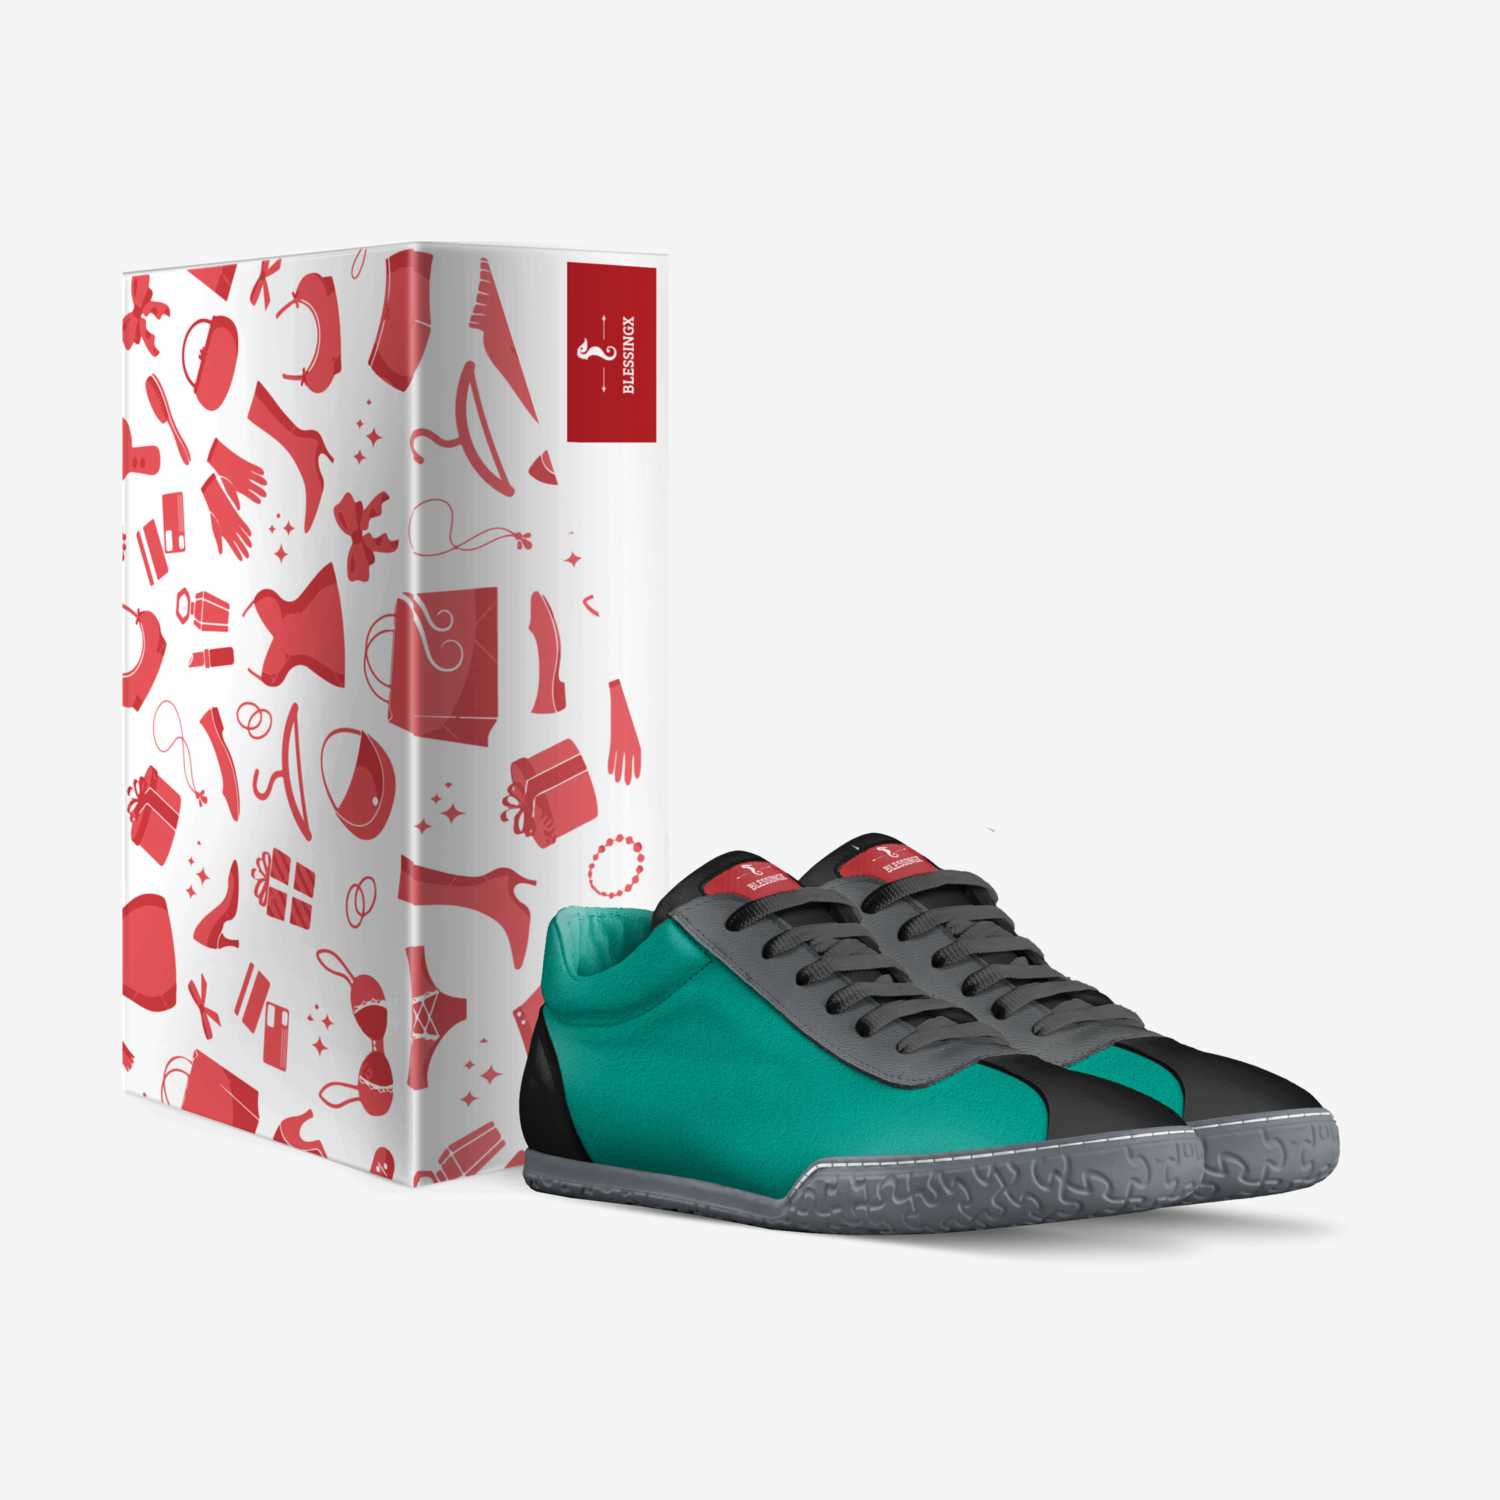 Blessingx custom made in Italy shoes by Jolanda Smithjolanda | Box view